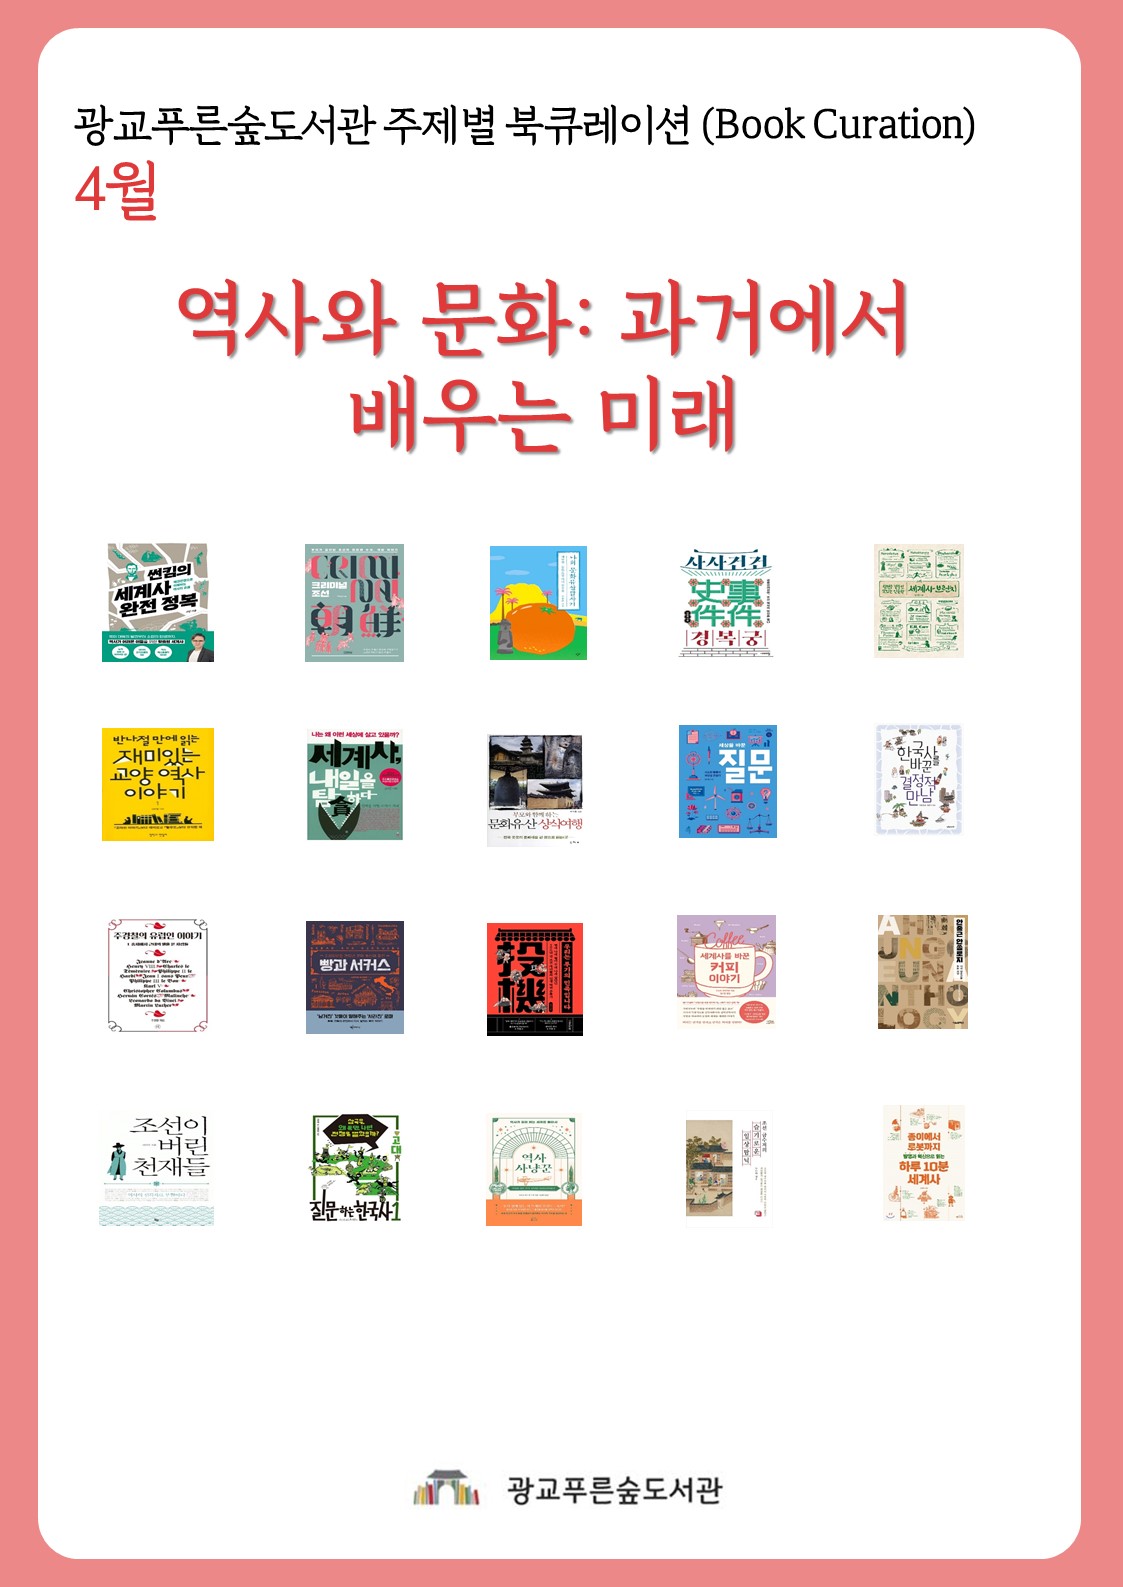 광교푸른숲도서관주제별북큐레이션안내문(4월).jpg